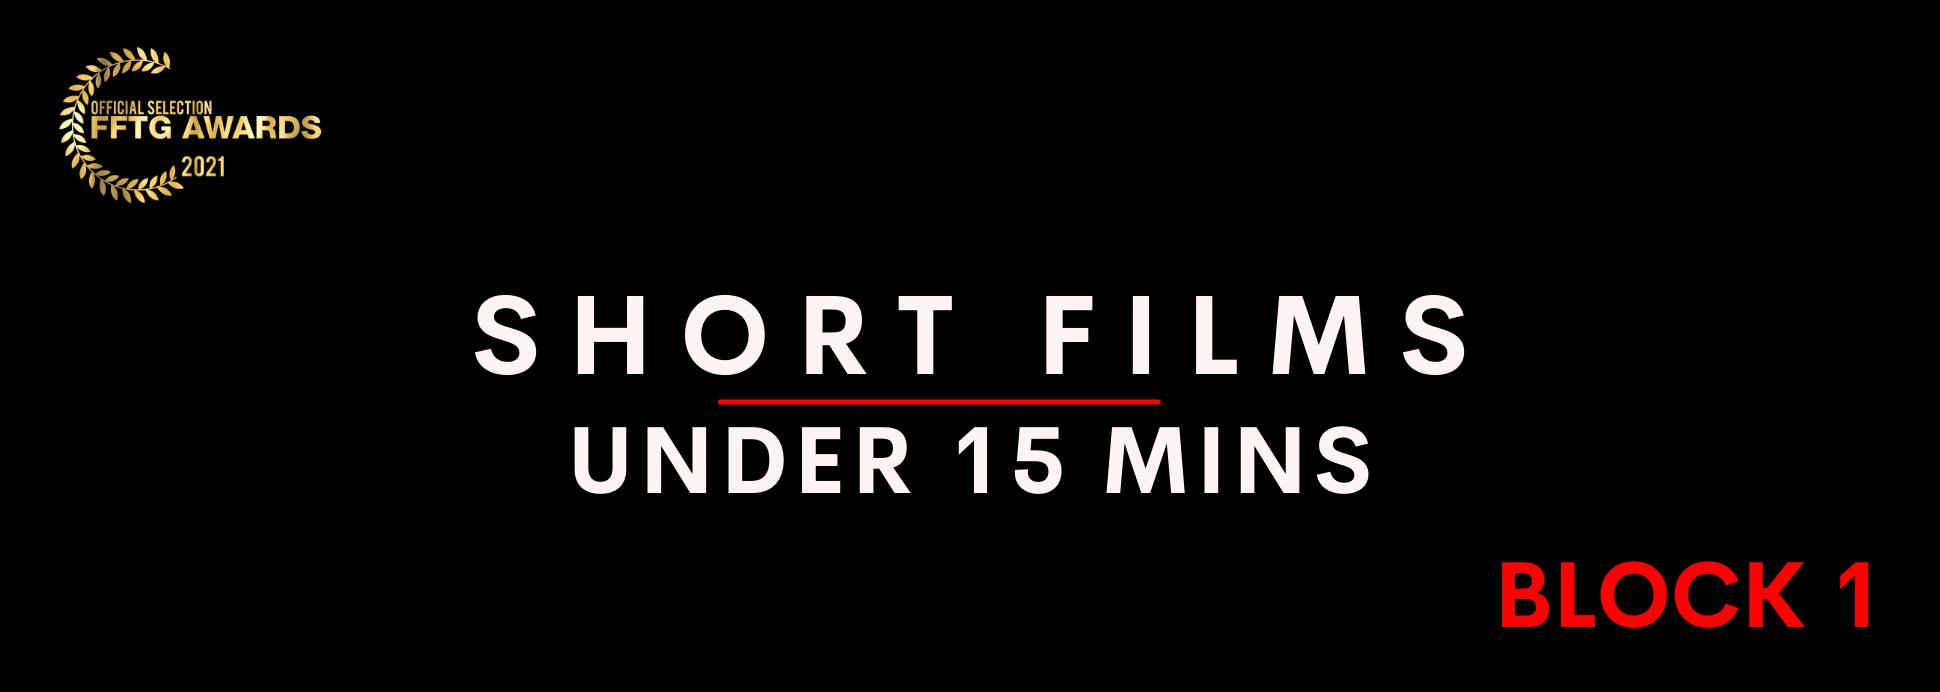 Short films under 15 mins BLOCK 1